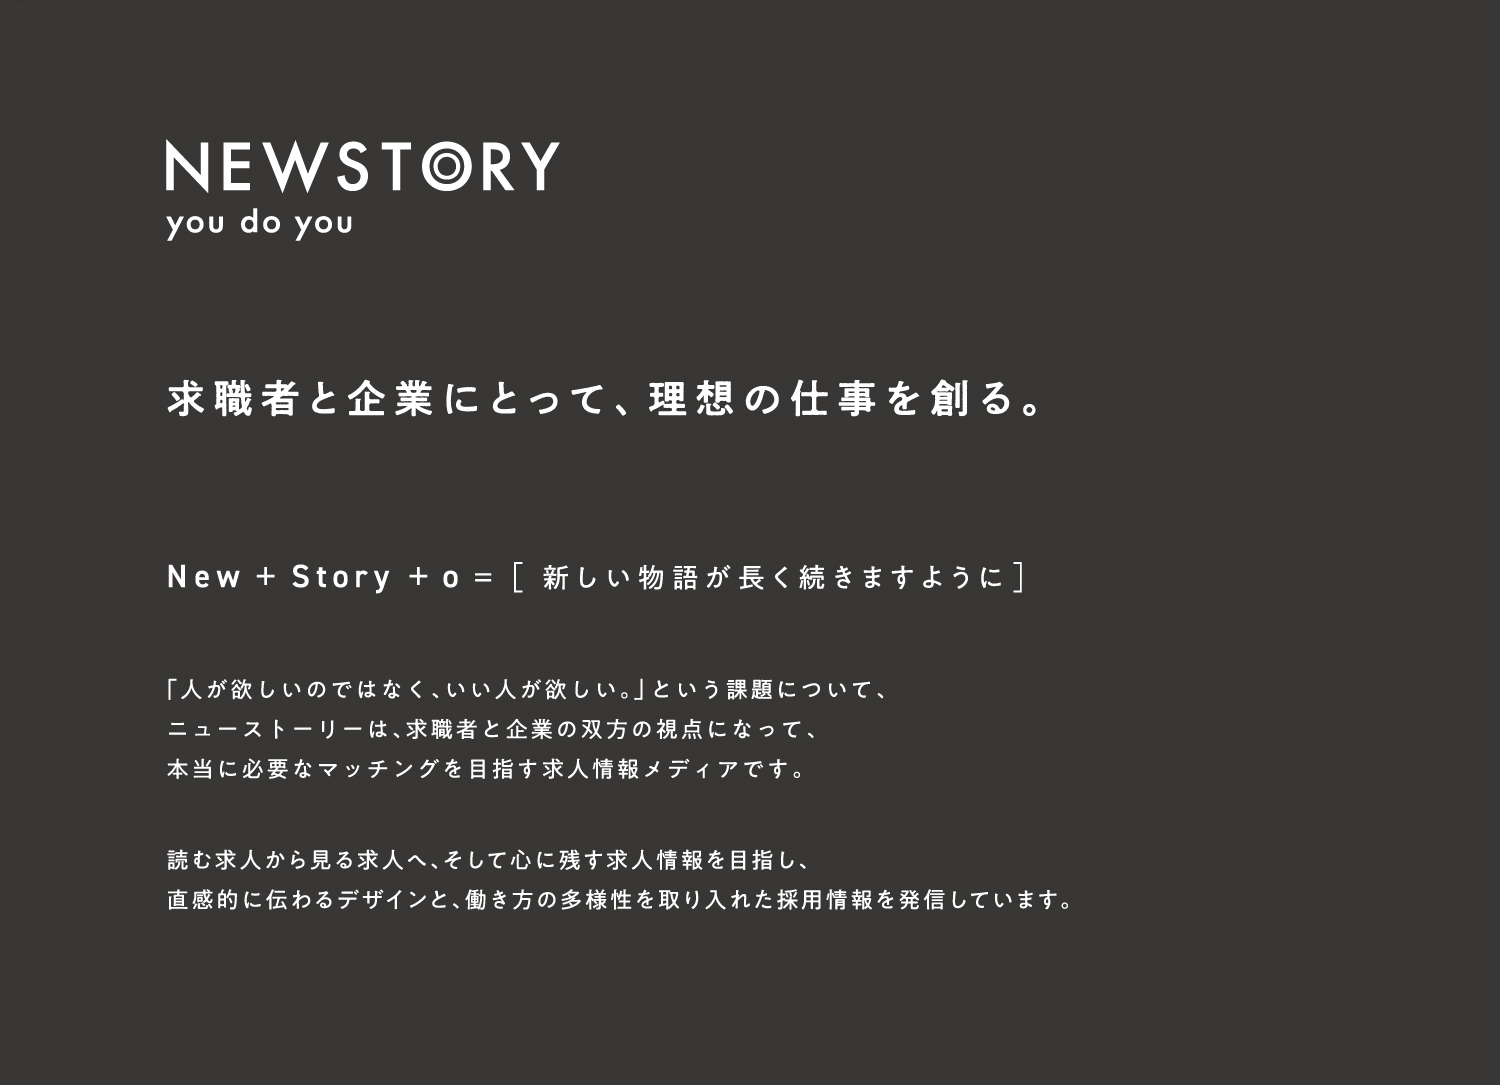 Newstoory 1